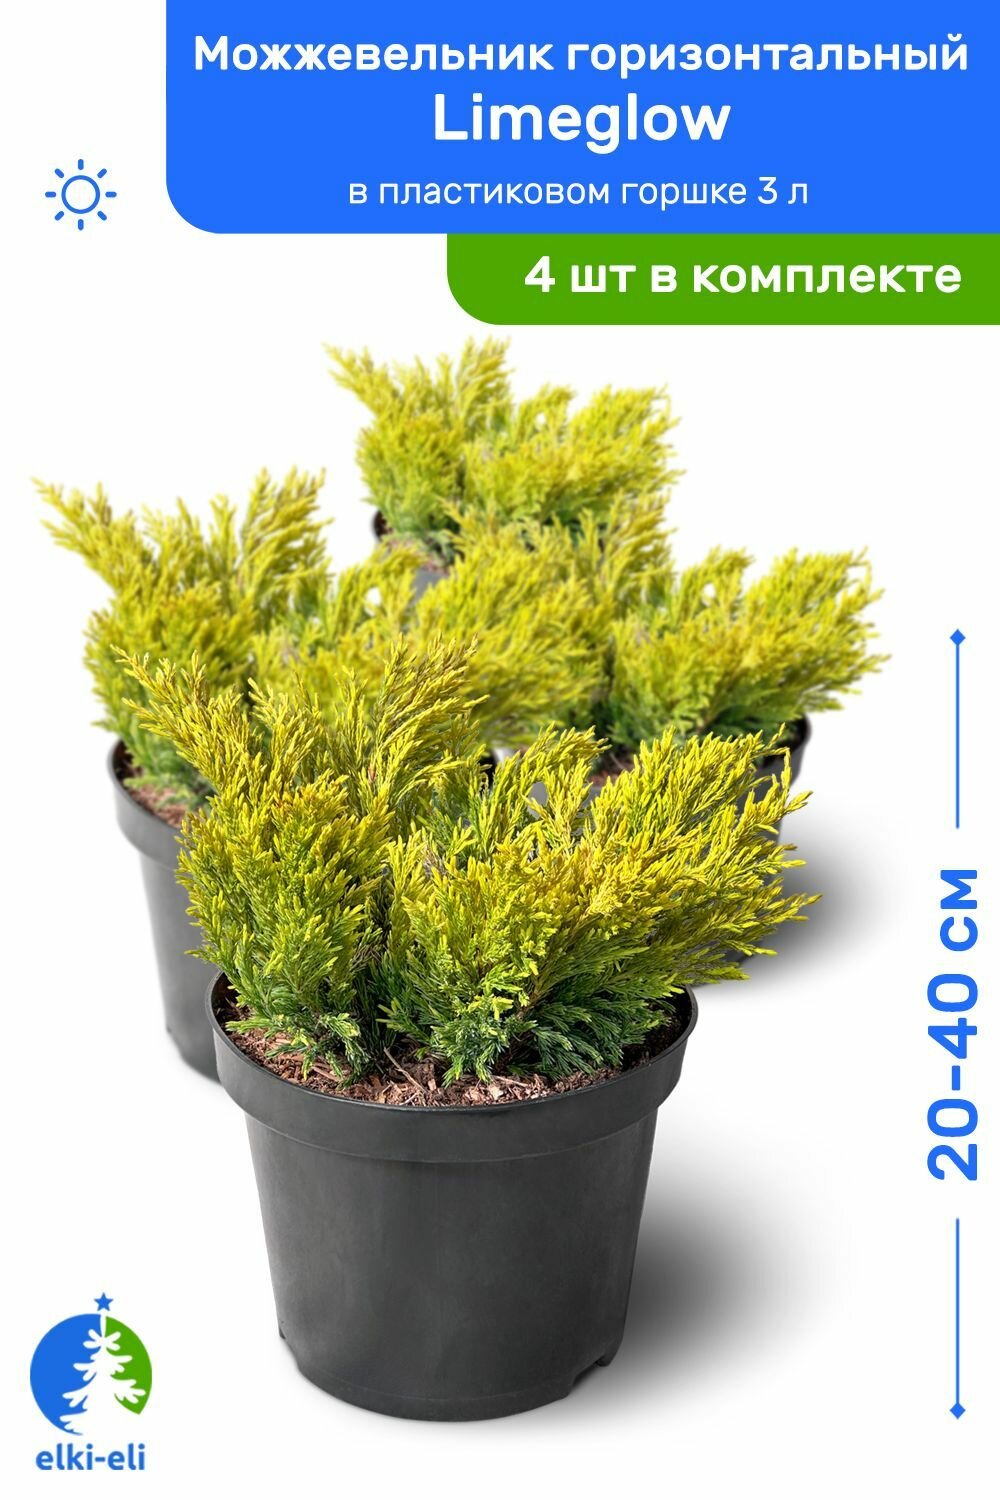 Можжевельник горизонтальный Limeglow (Лаймглоу) 20-40 см в пластиковом горшке 3 л саженец живое хвойное растение комплект из 4 шт